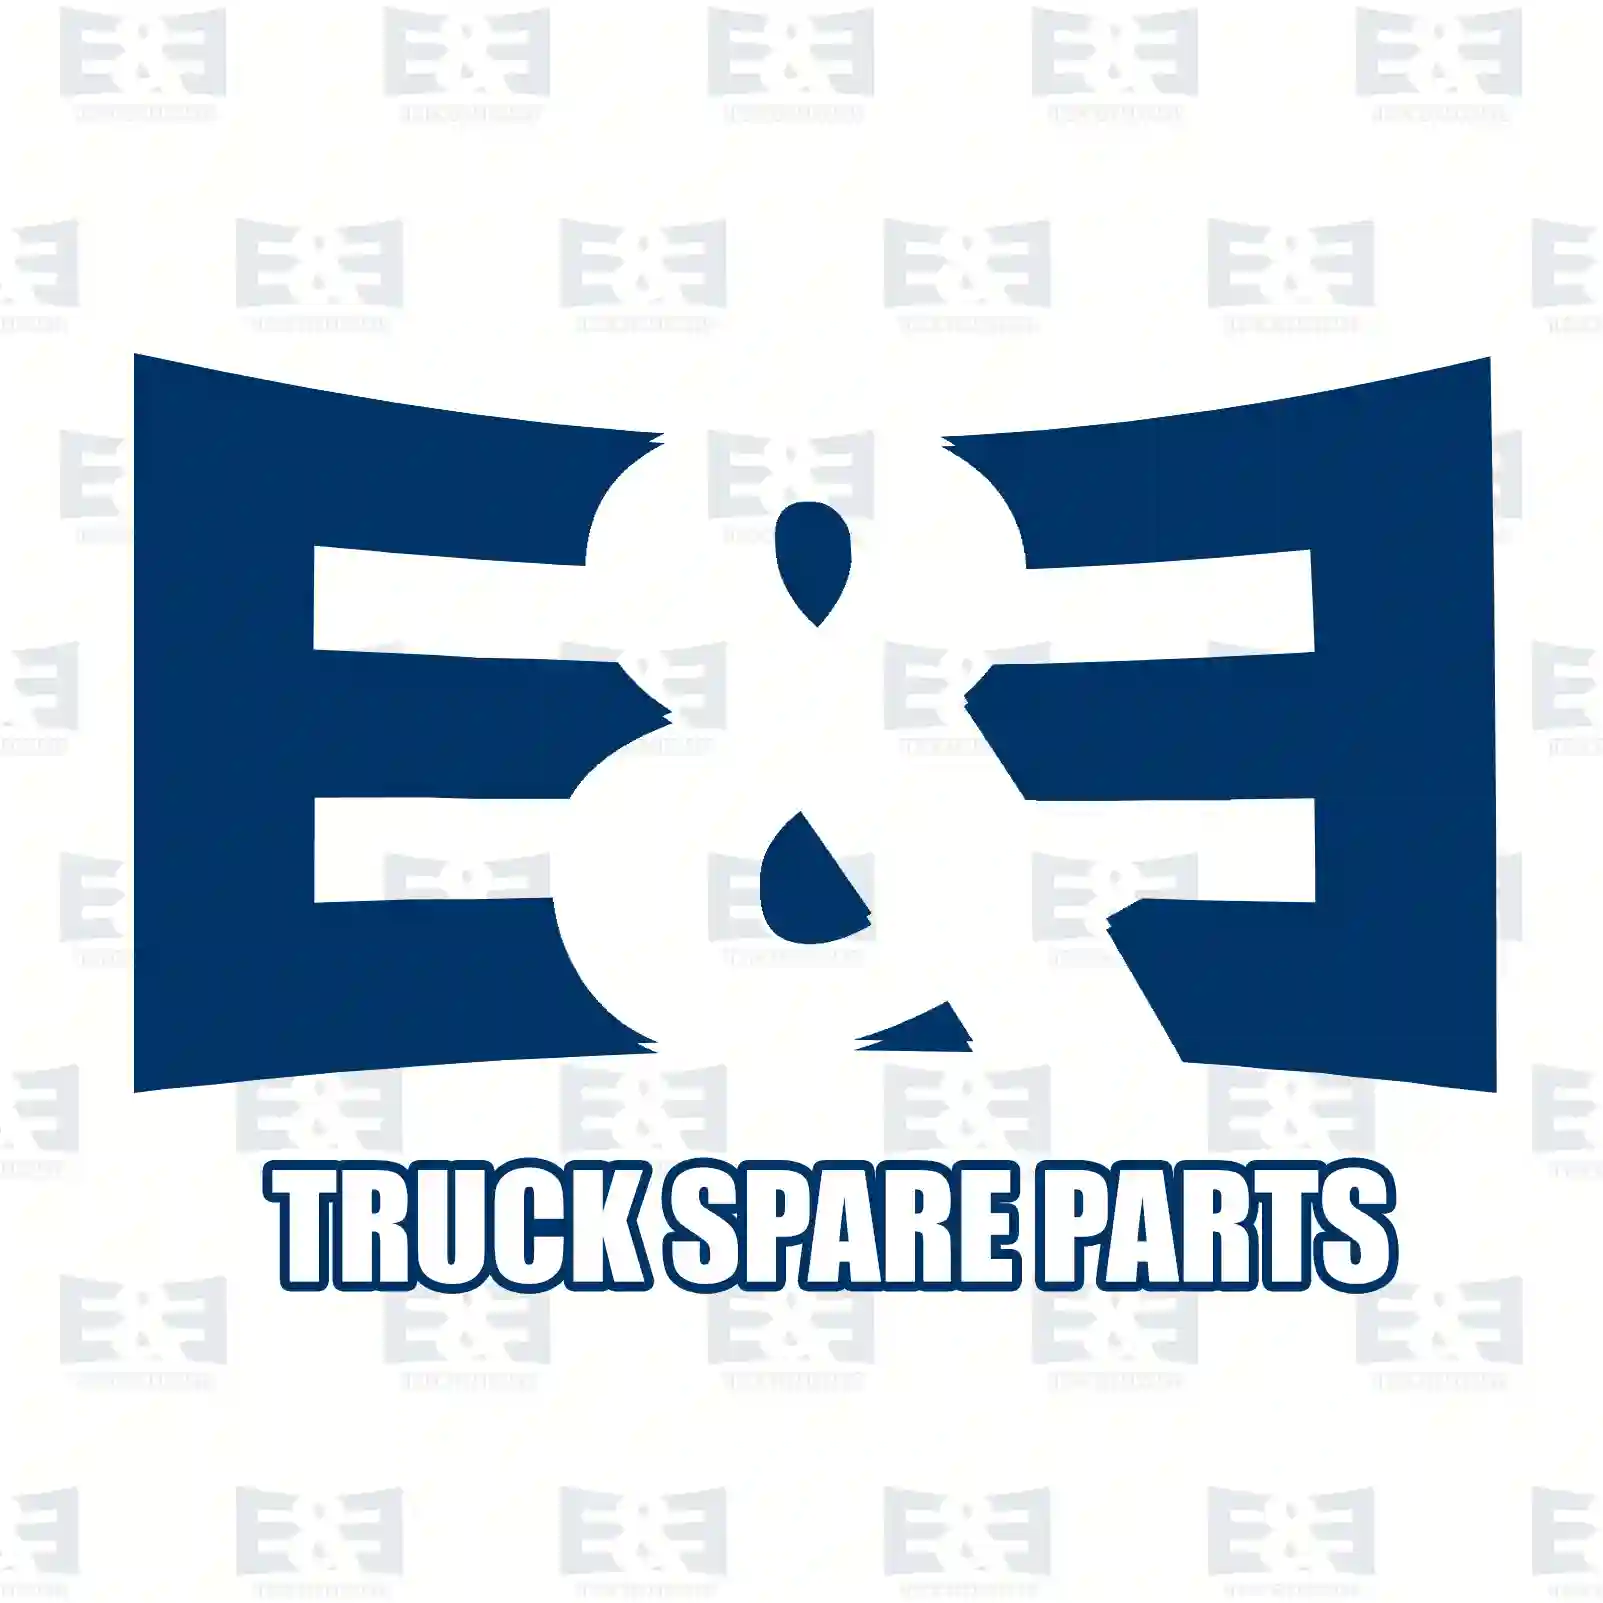 Bulb, 2E2286414, 81259010107, 000000000439, ZG20313-0008 ||  2E2286414 E&E Truck Spare Parts | Truck Spare Parts, Auotomotive Spare Parts Bulb, 2E2286414, 81259010107, 000000000439, ZG20313-0008 ||  2E2286414 E&E Truck Spare Parts | Truck Spare Parts, Auotomotive Spare Parts